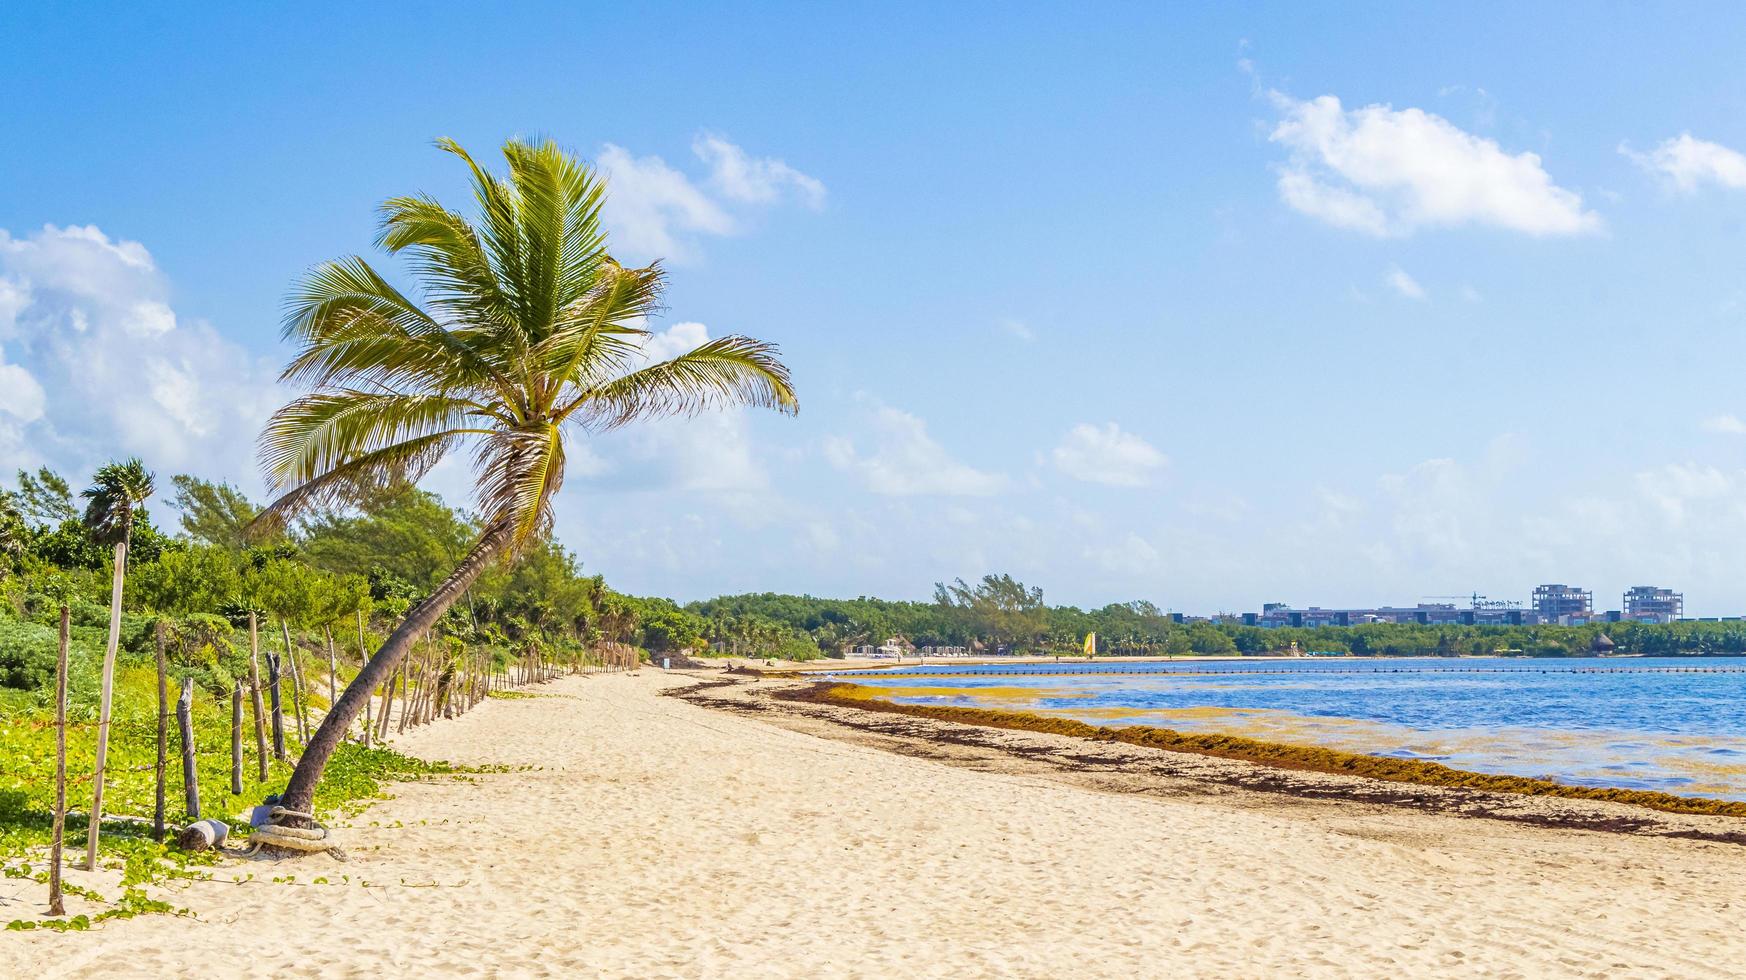 spiaggia messicana tropicale con palme playa del carmen messico foto